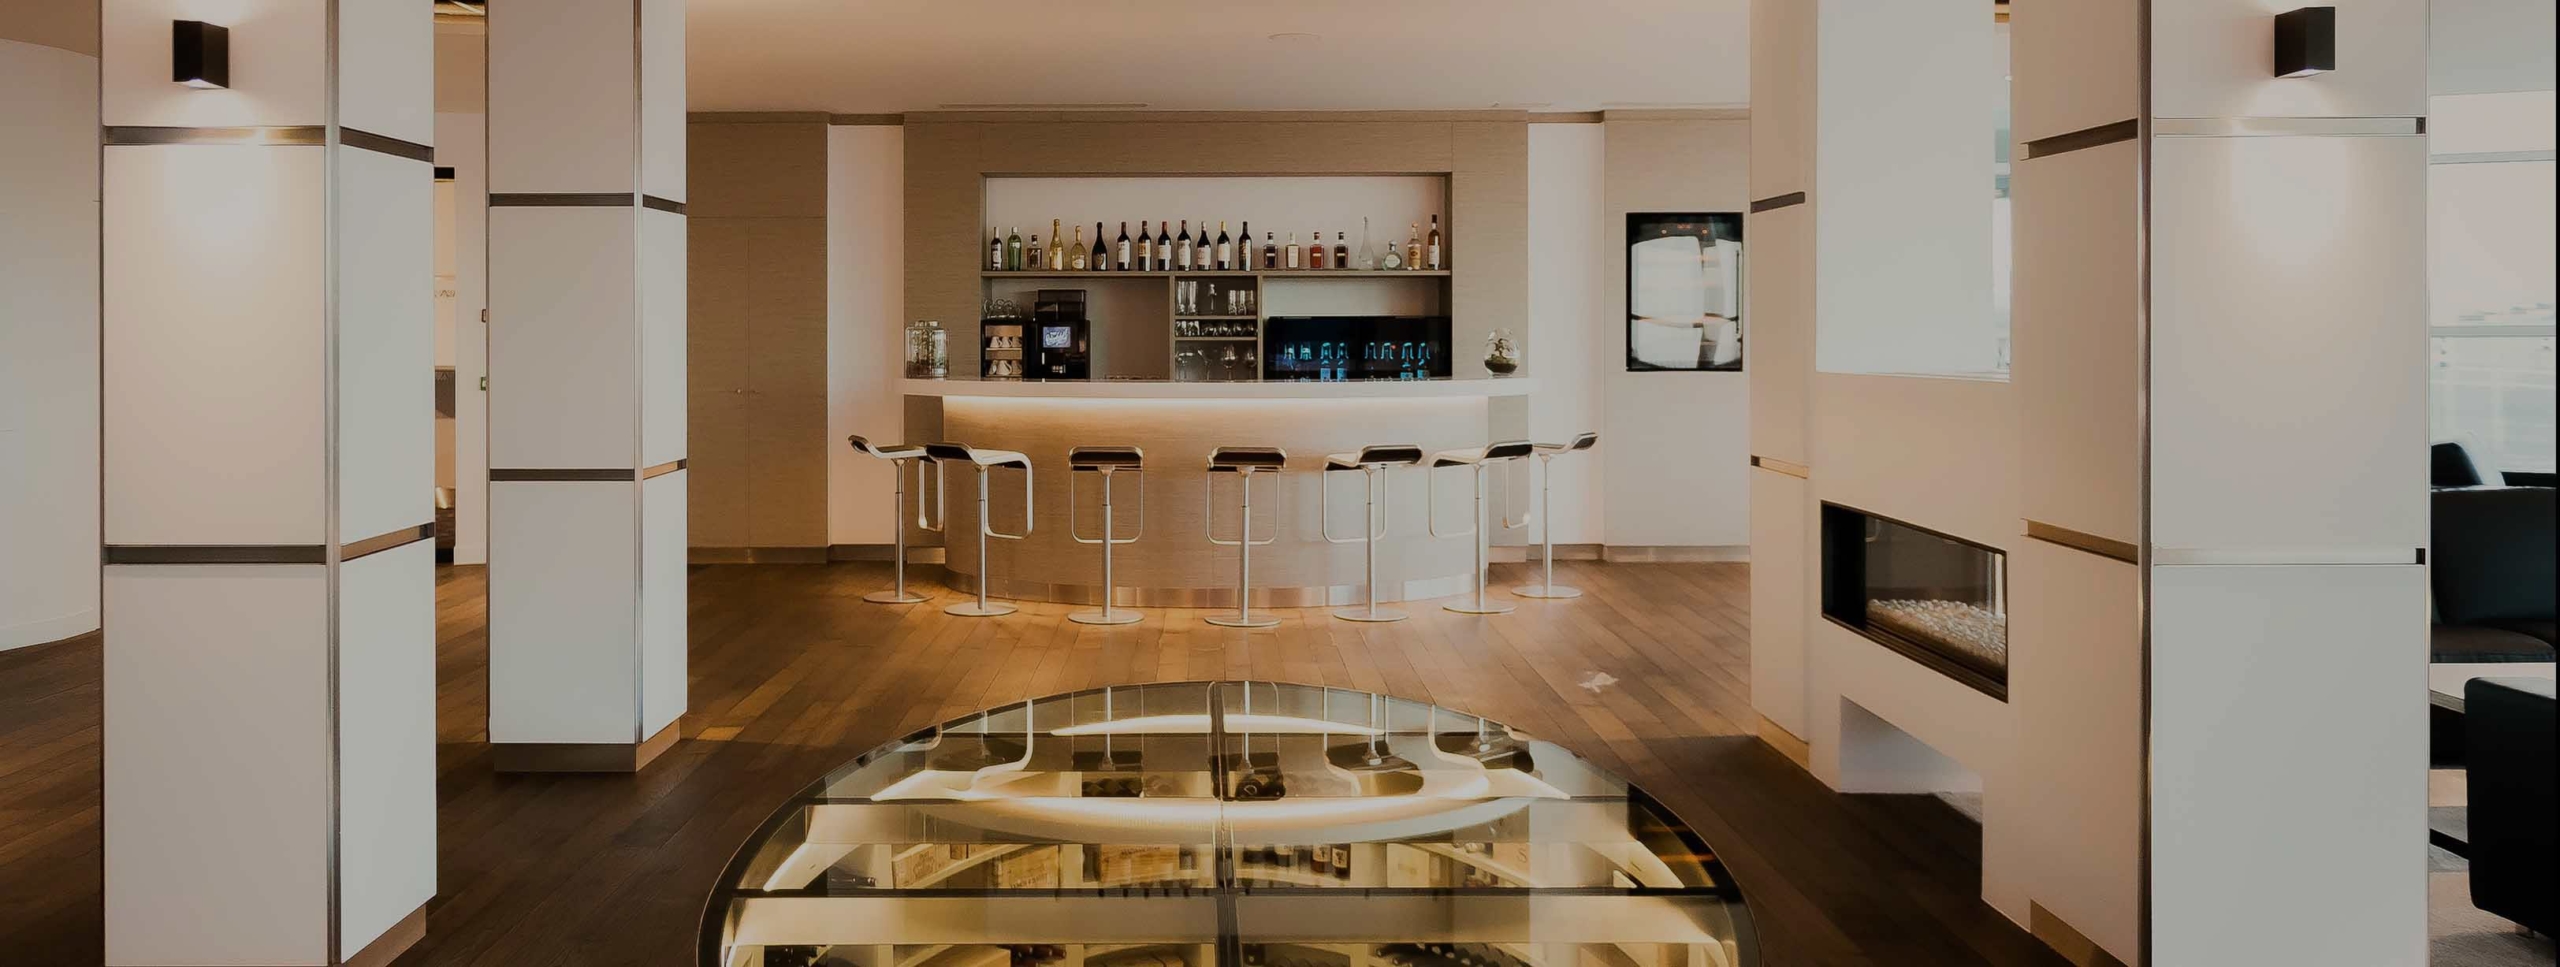 Salon passagers avec bar et cave à vins - FBO Paris Le Bourget